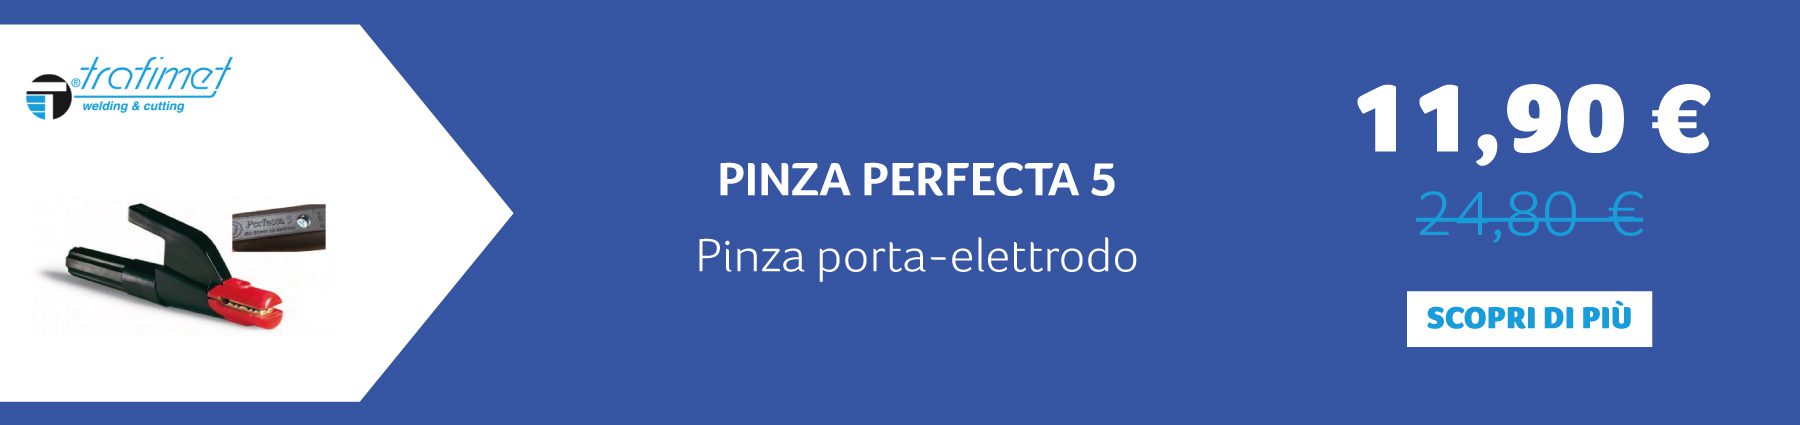 TRAFIMET - PINZA PERFECTA 5 Pinza porta-elettrodo. 11,90 € anziché 24,80 €